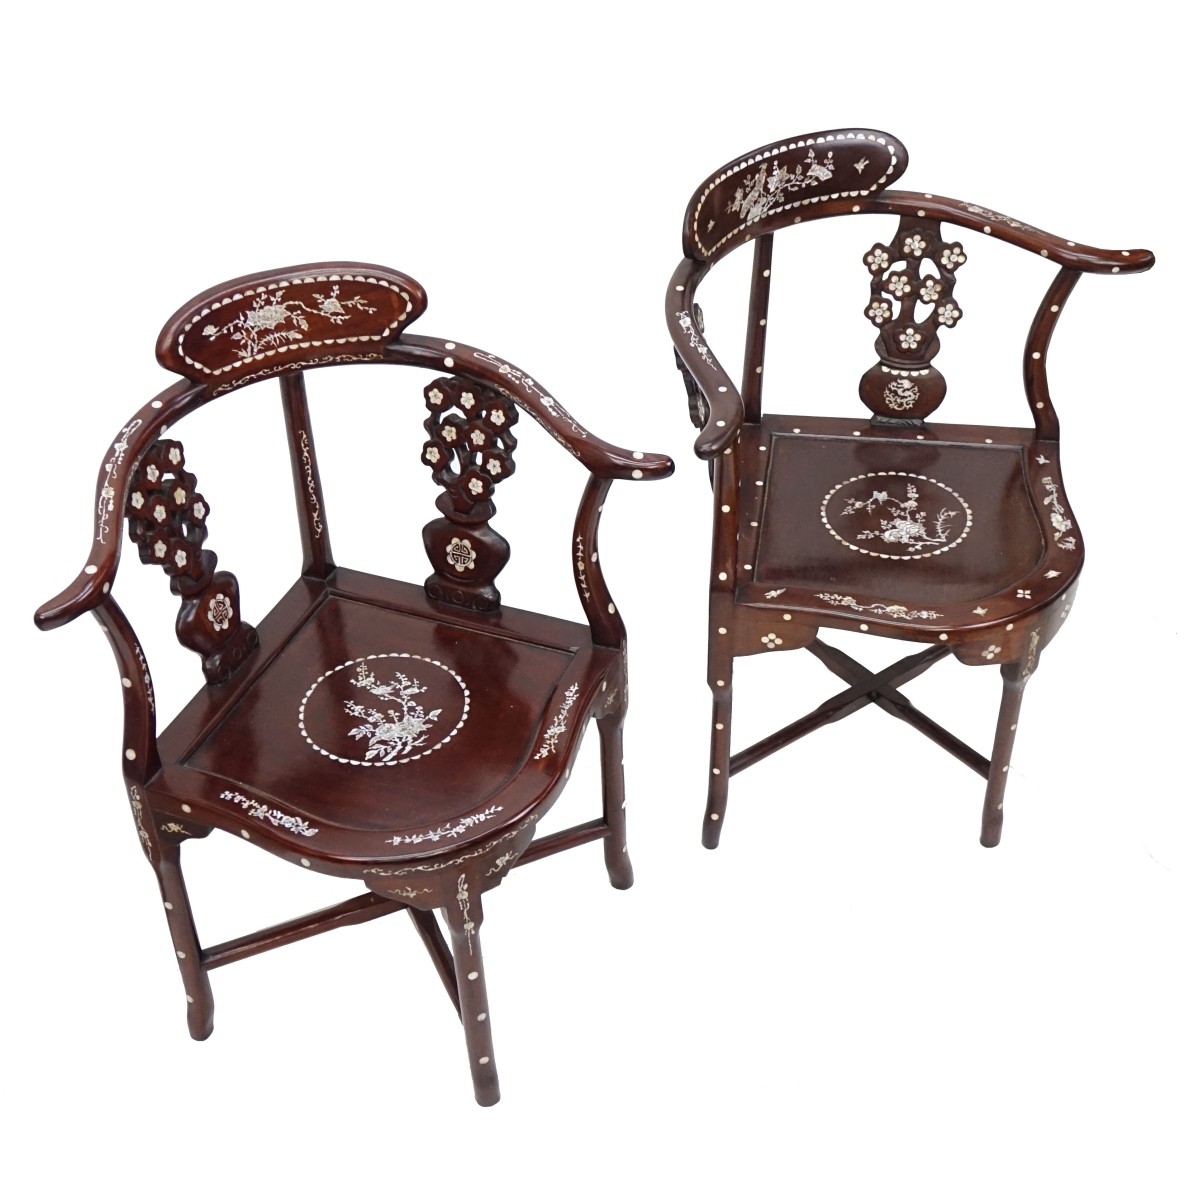 Pair of Chinese Corner Chairs